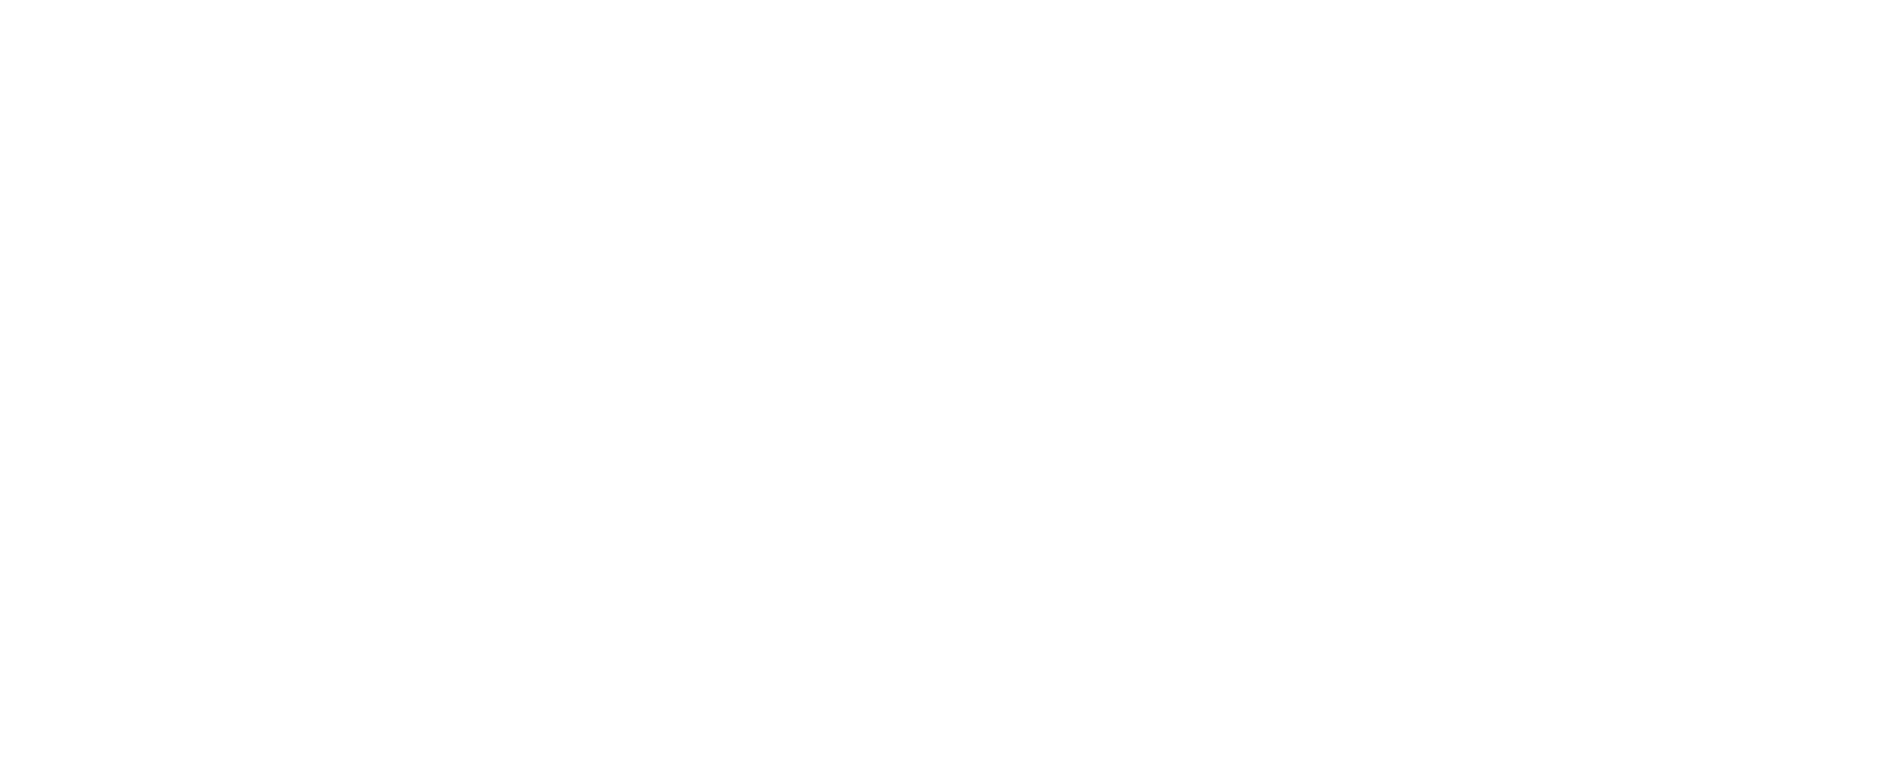 Dolphin Wedge DW-123なら　苦手なバンカーが好きになる！